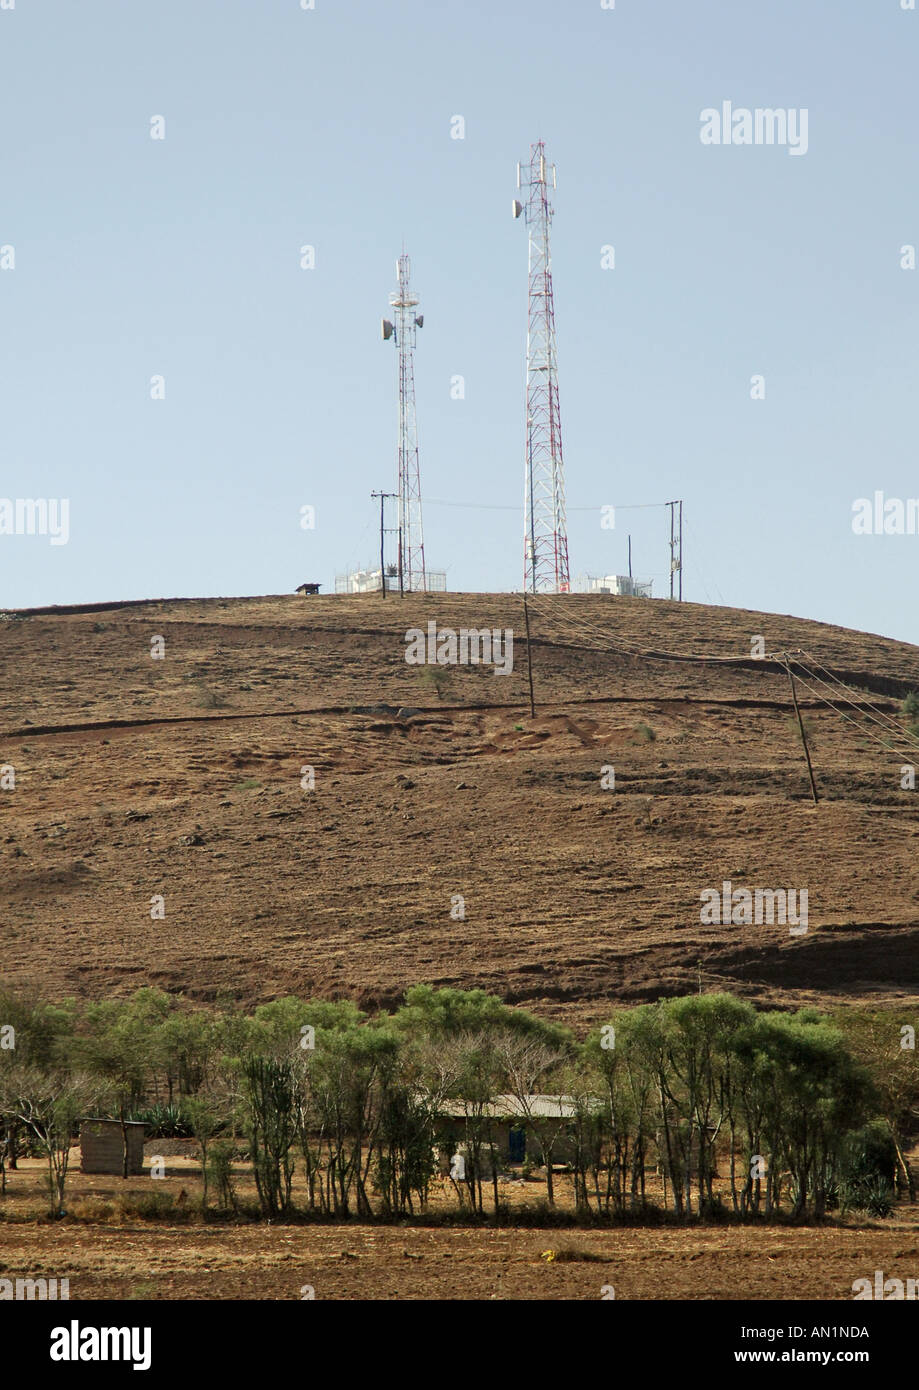 Les tours de télécommunications dans une région rurale du nord de la Tanzanie Banque D'Images